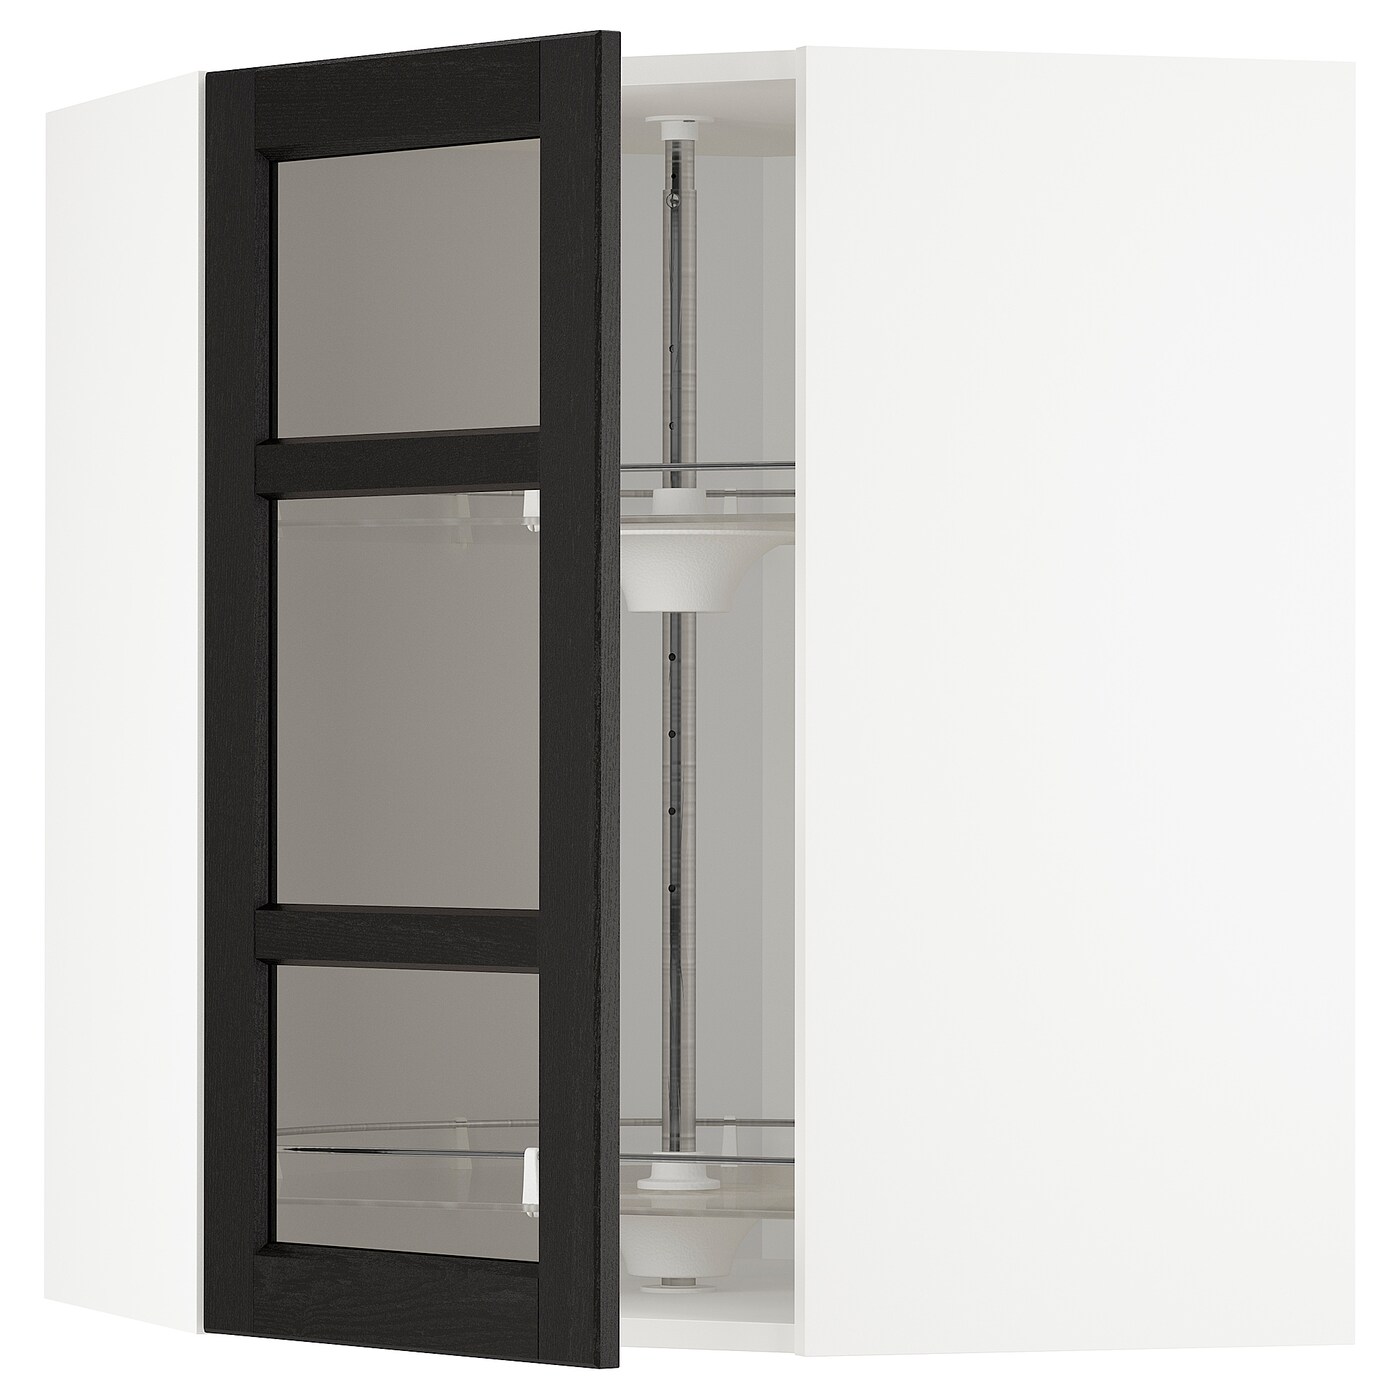 Навесной шкаф - IKEA METOD, 67.5х67.5х80 см, белый/черный/стекло, МЕТОД ИКЕА